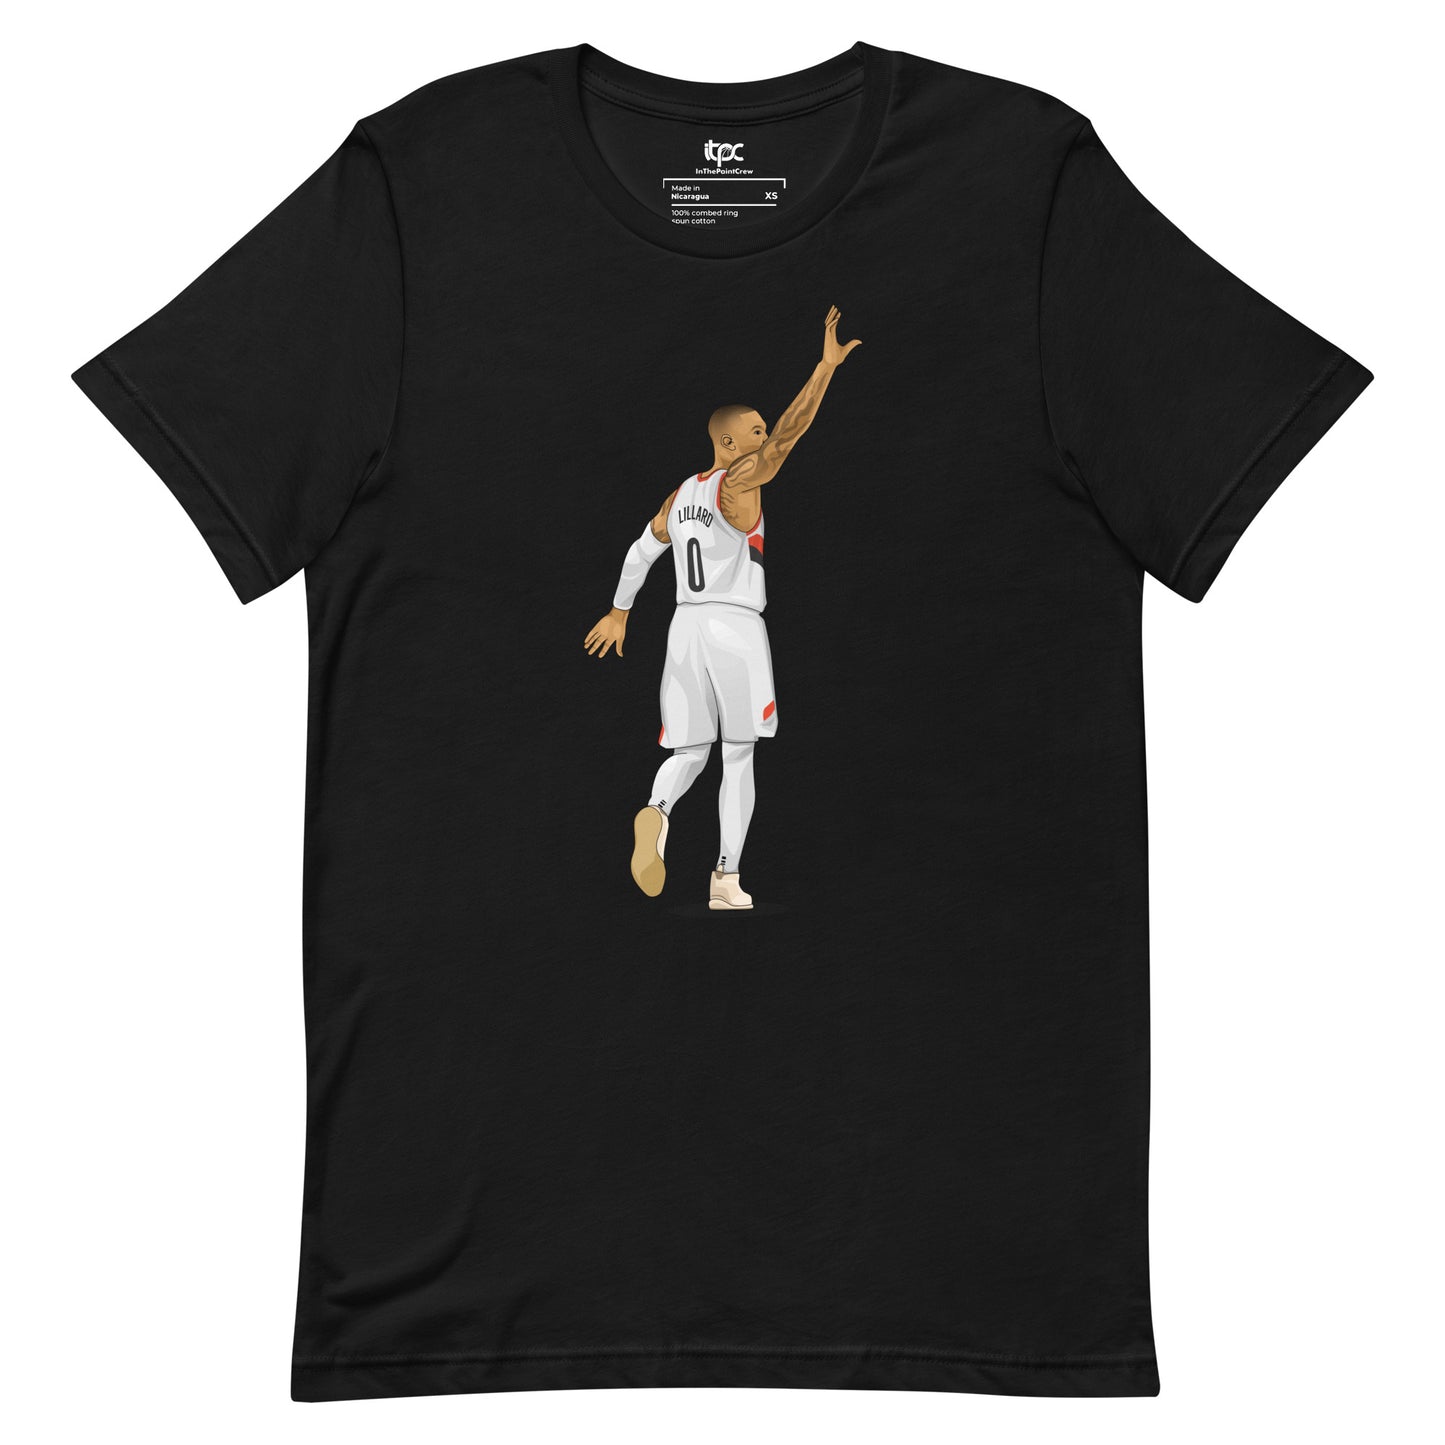 Damian Lillard - "The Last Word" t-shirt